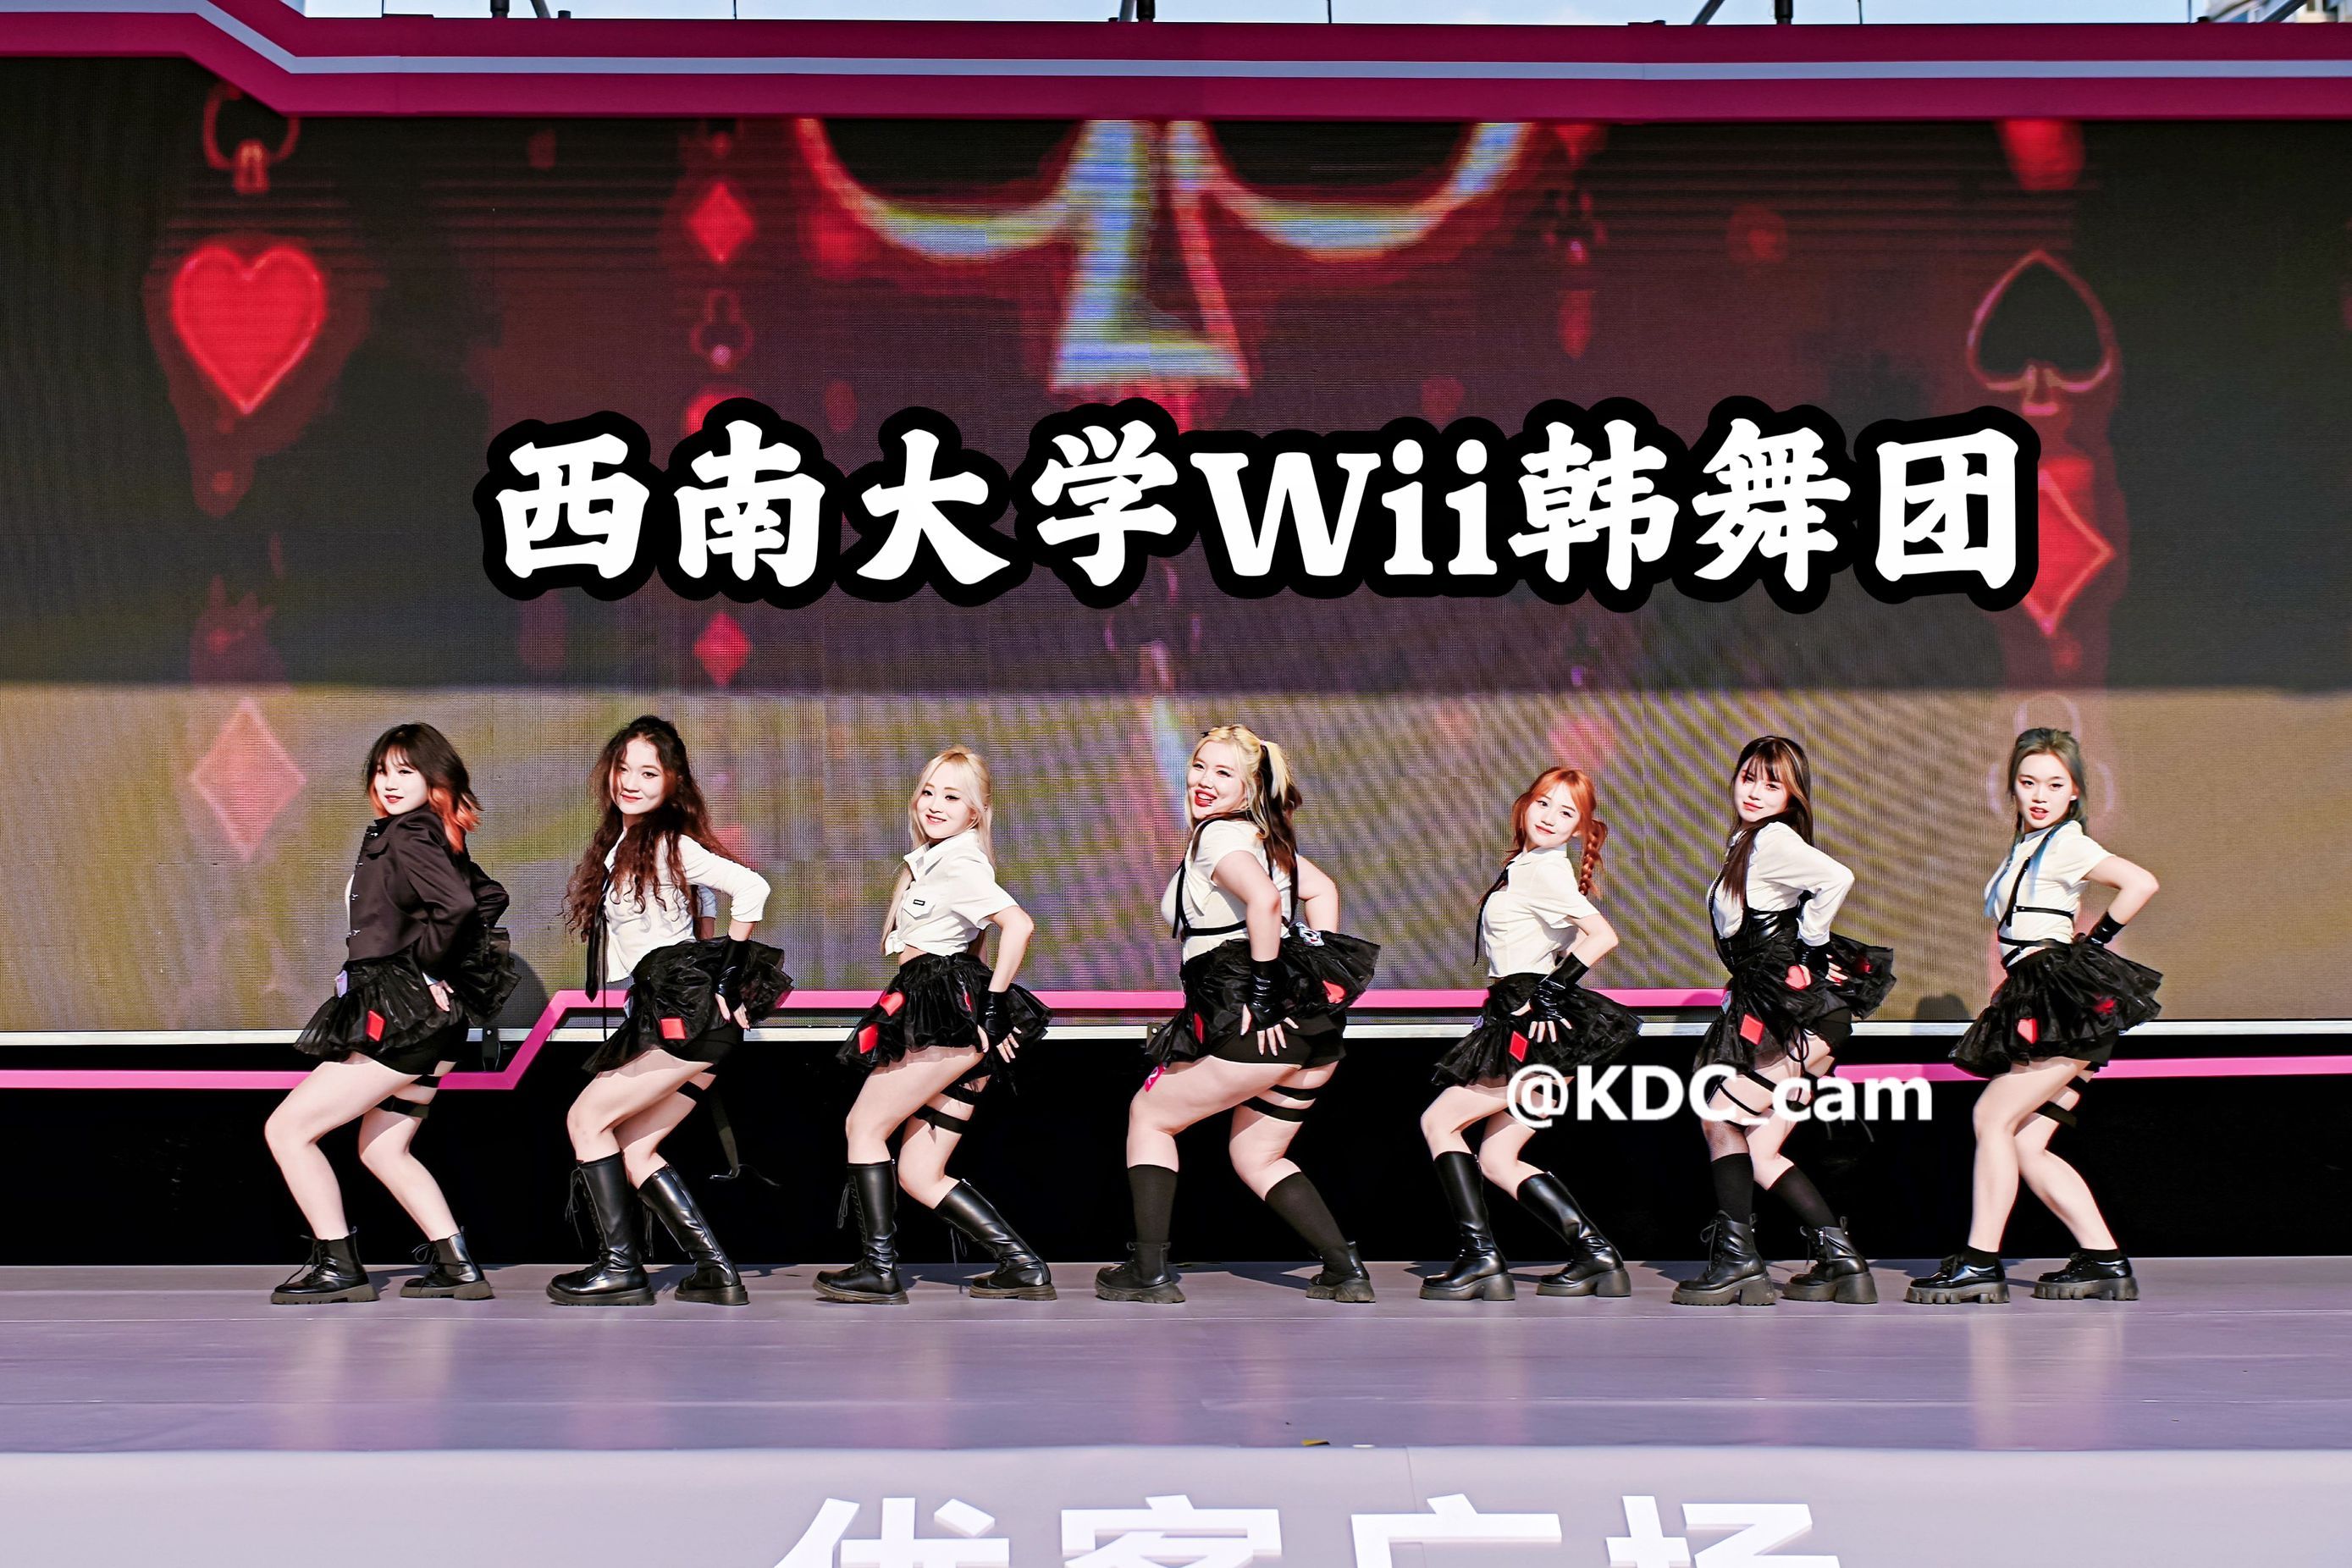 【KDC】二代和五代竟然可以用概念碰撞！西南大学Wii韩舞团超齐翻跳！